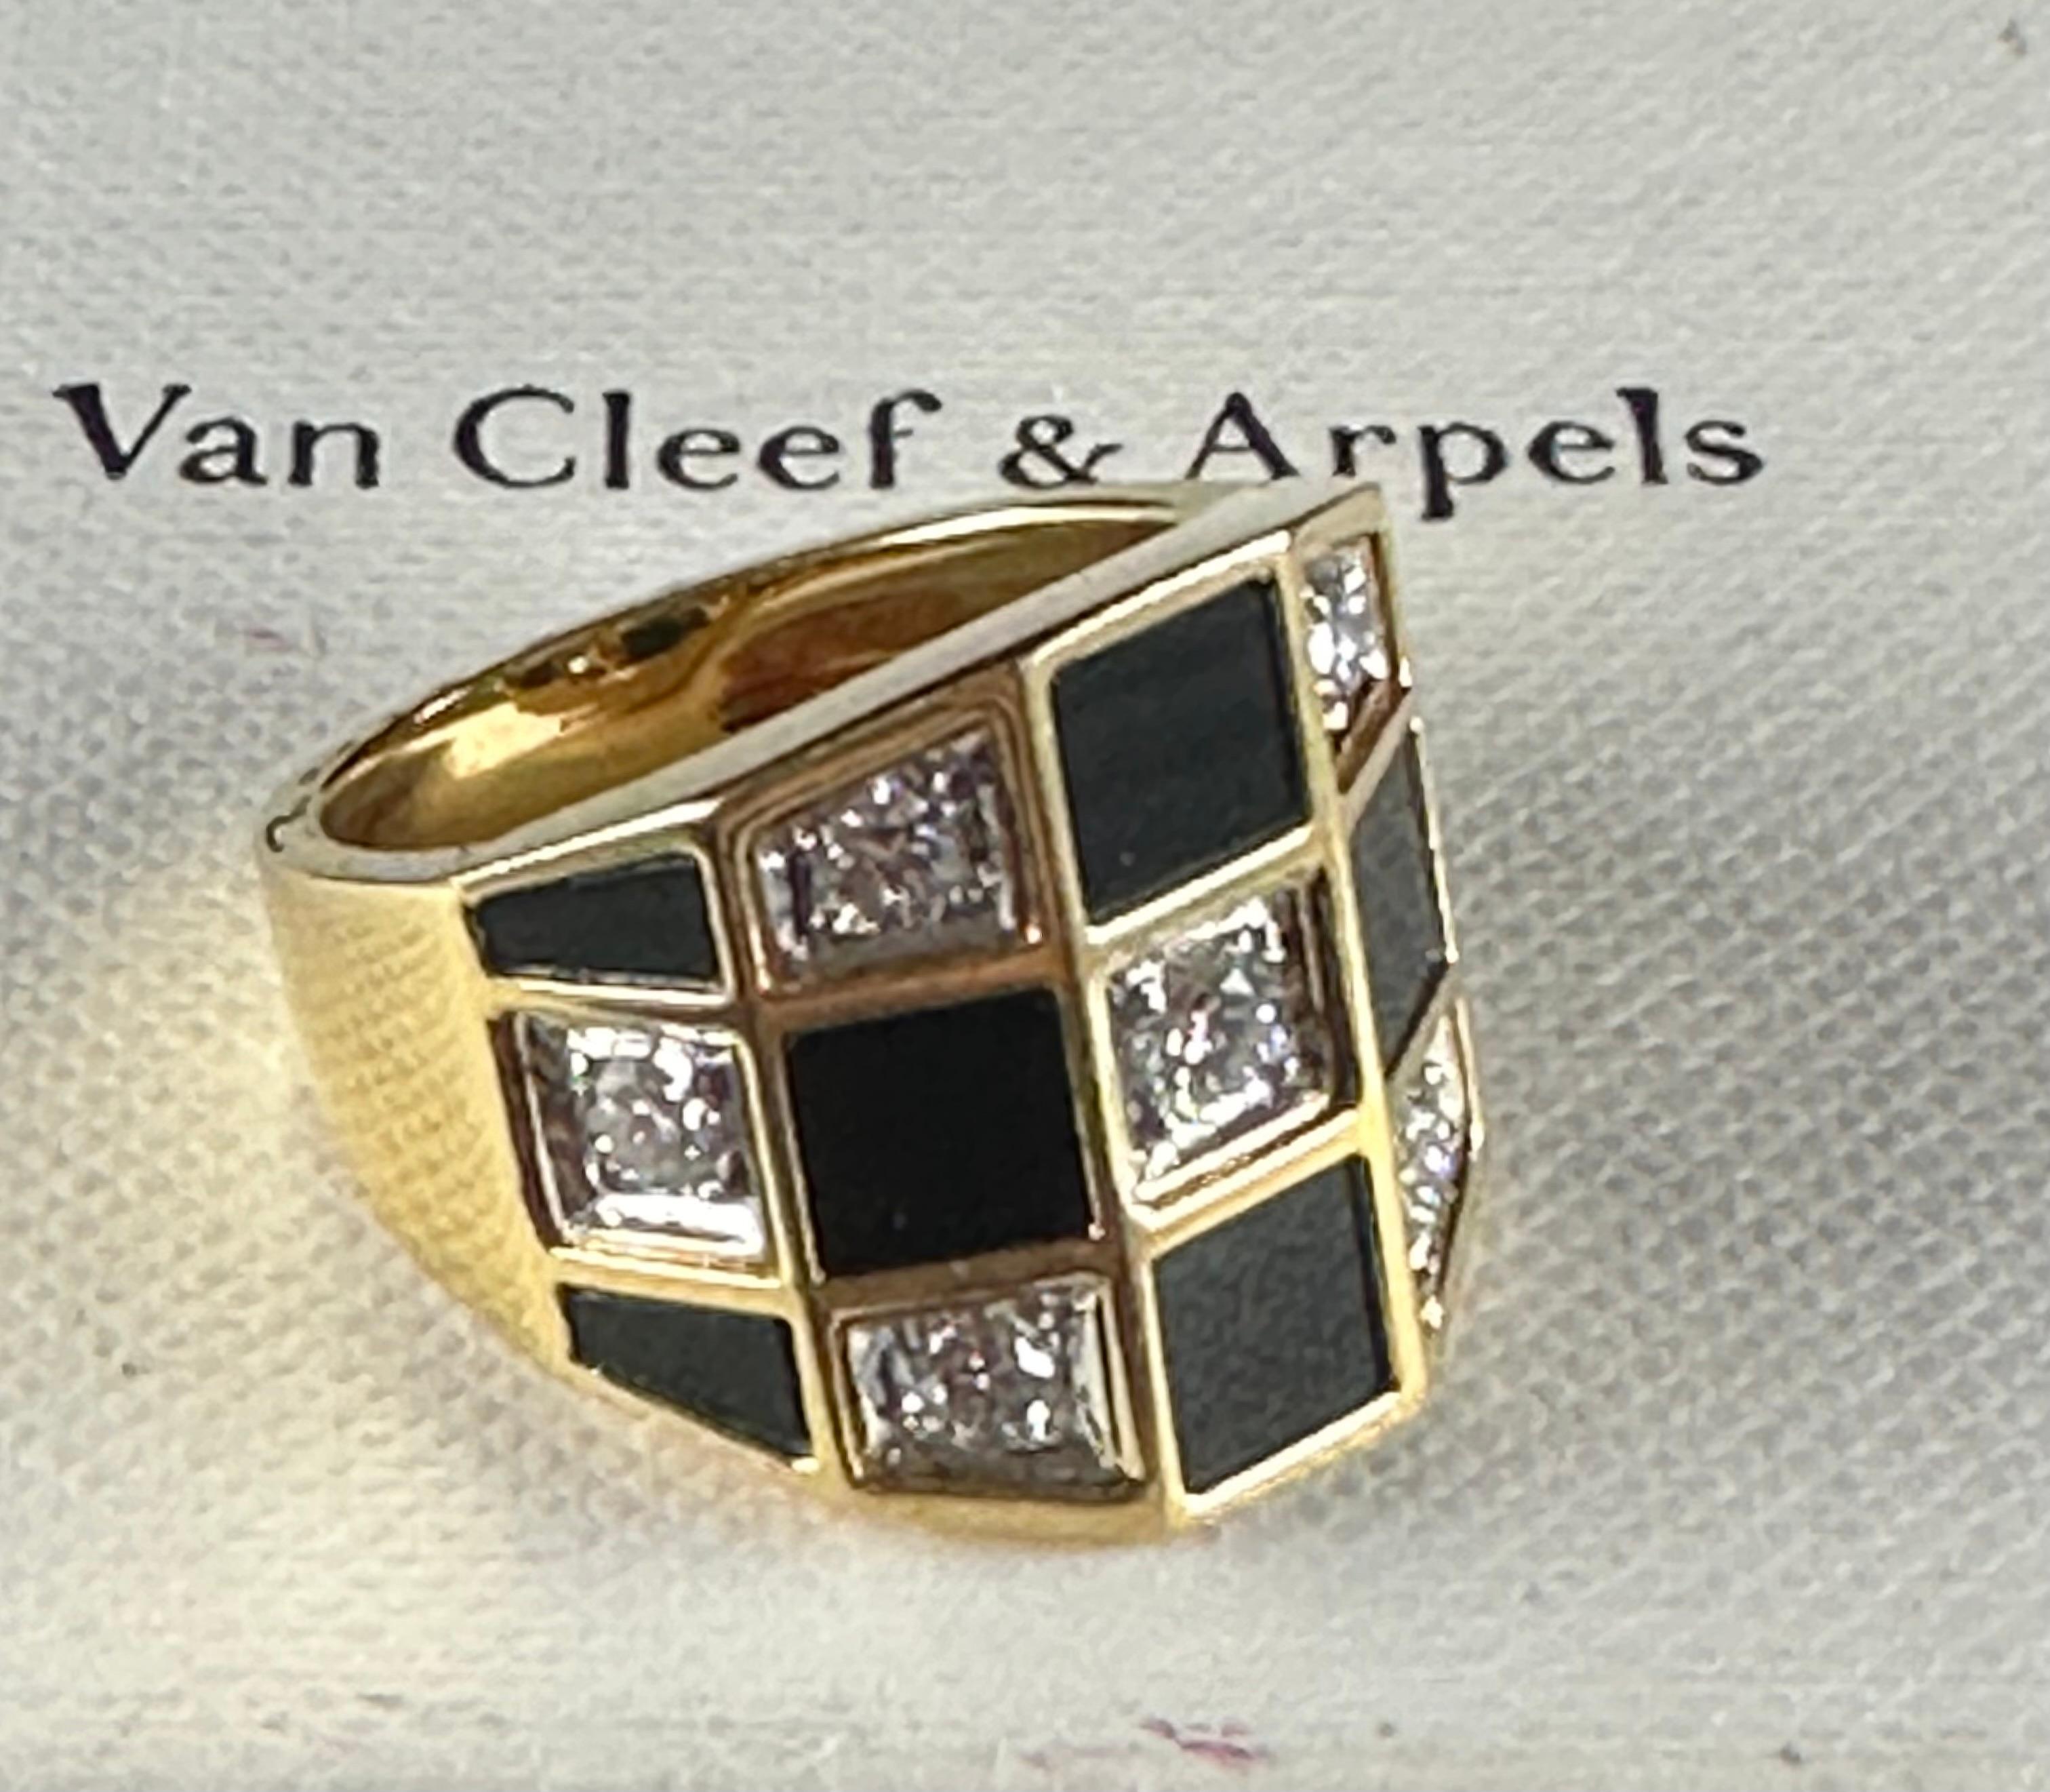 Van Cleef und Arpels circa 1960er Jahre Diamant & schwarzer Onyx Schachbrettmuster Zugbrücke förmigen Cocktail-Ring, Französisch Hallmark Größe 5 und kann in der Größe angepasst werden. Siehe sieben runde Diamanten und acht schwarzen Onyx eingelegt